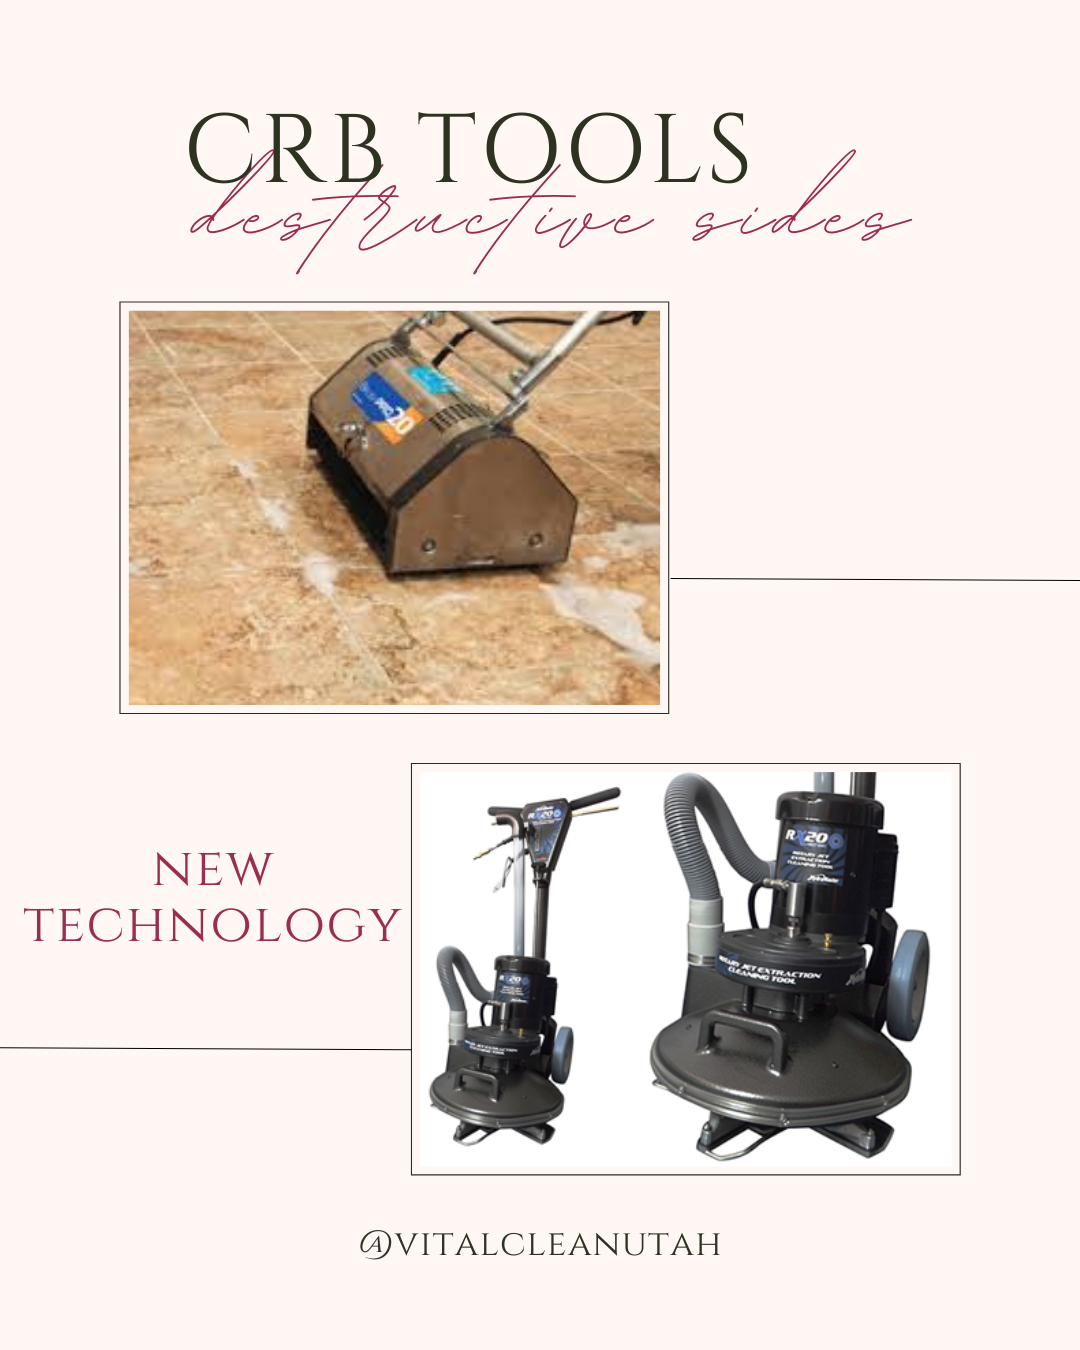 CRB Carpet Tools Destructive Side: Fiber Damage Unveiled